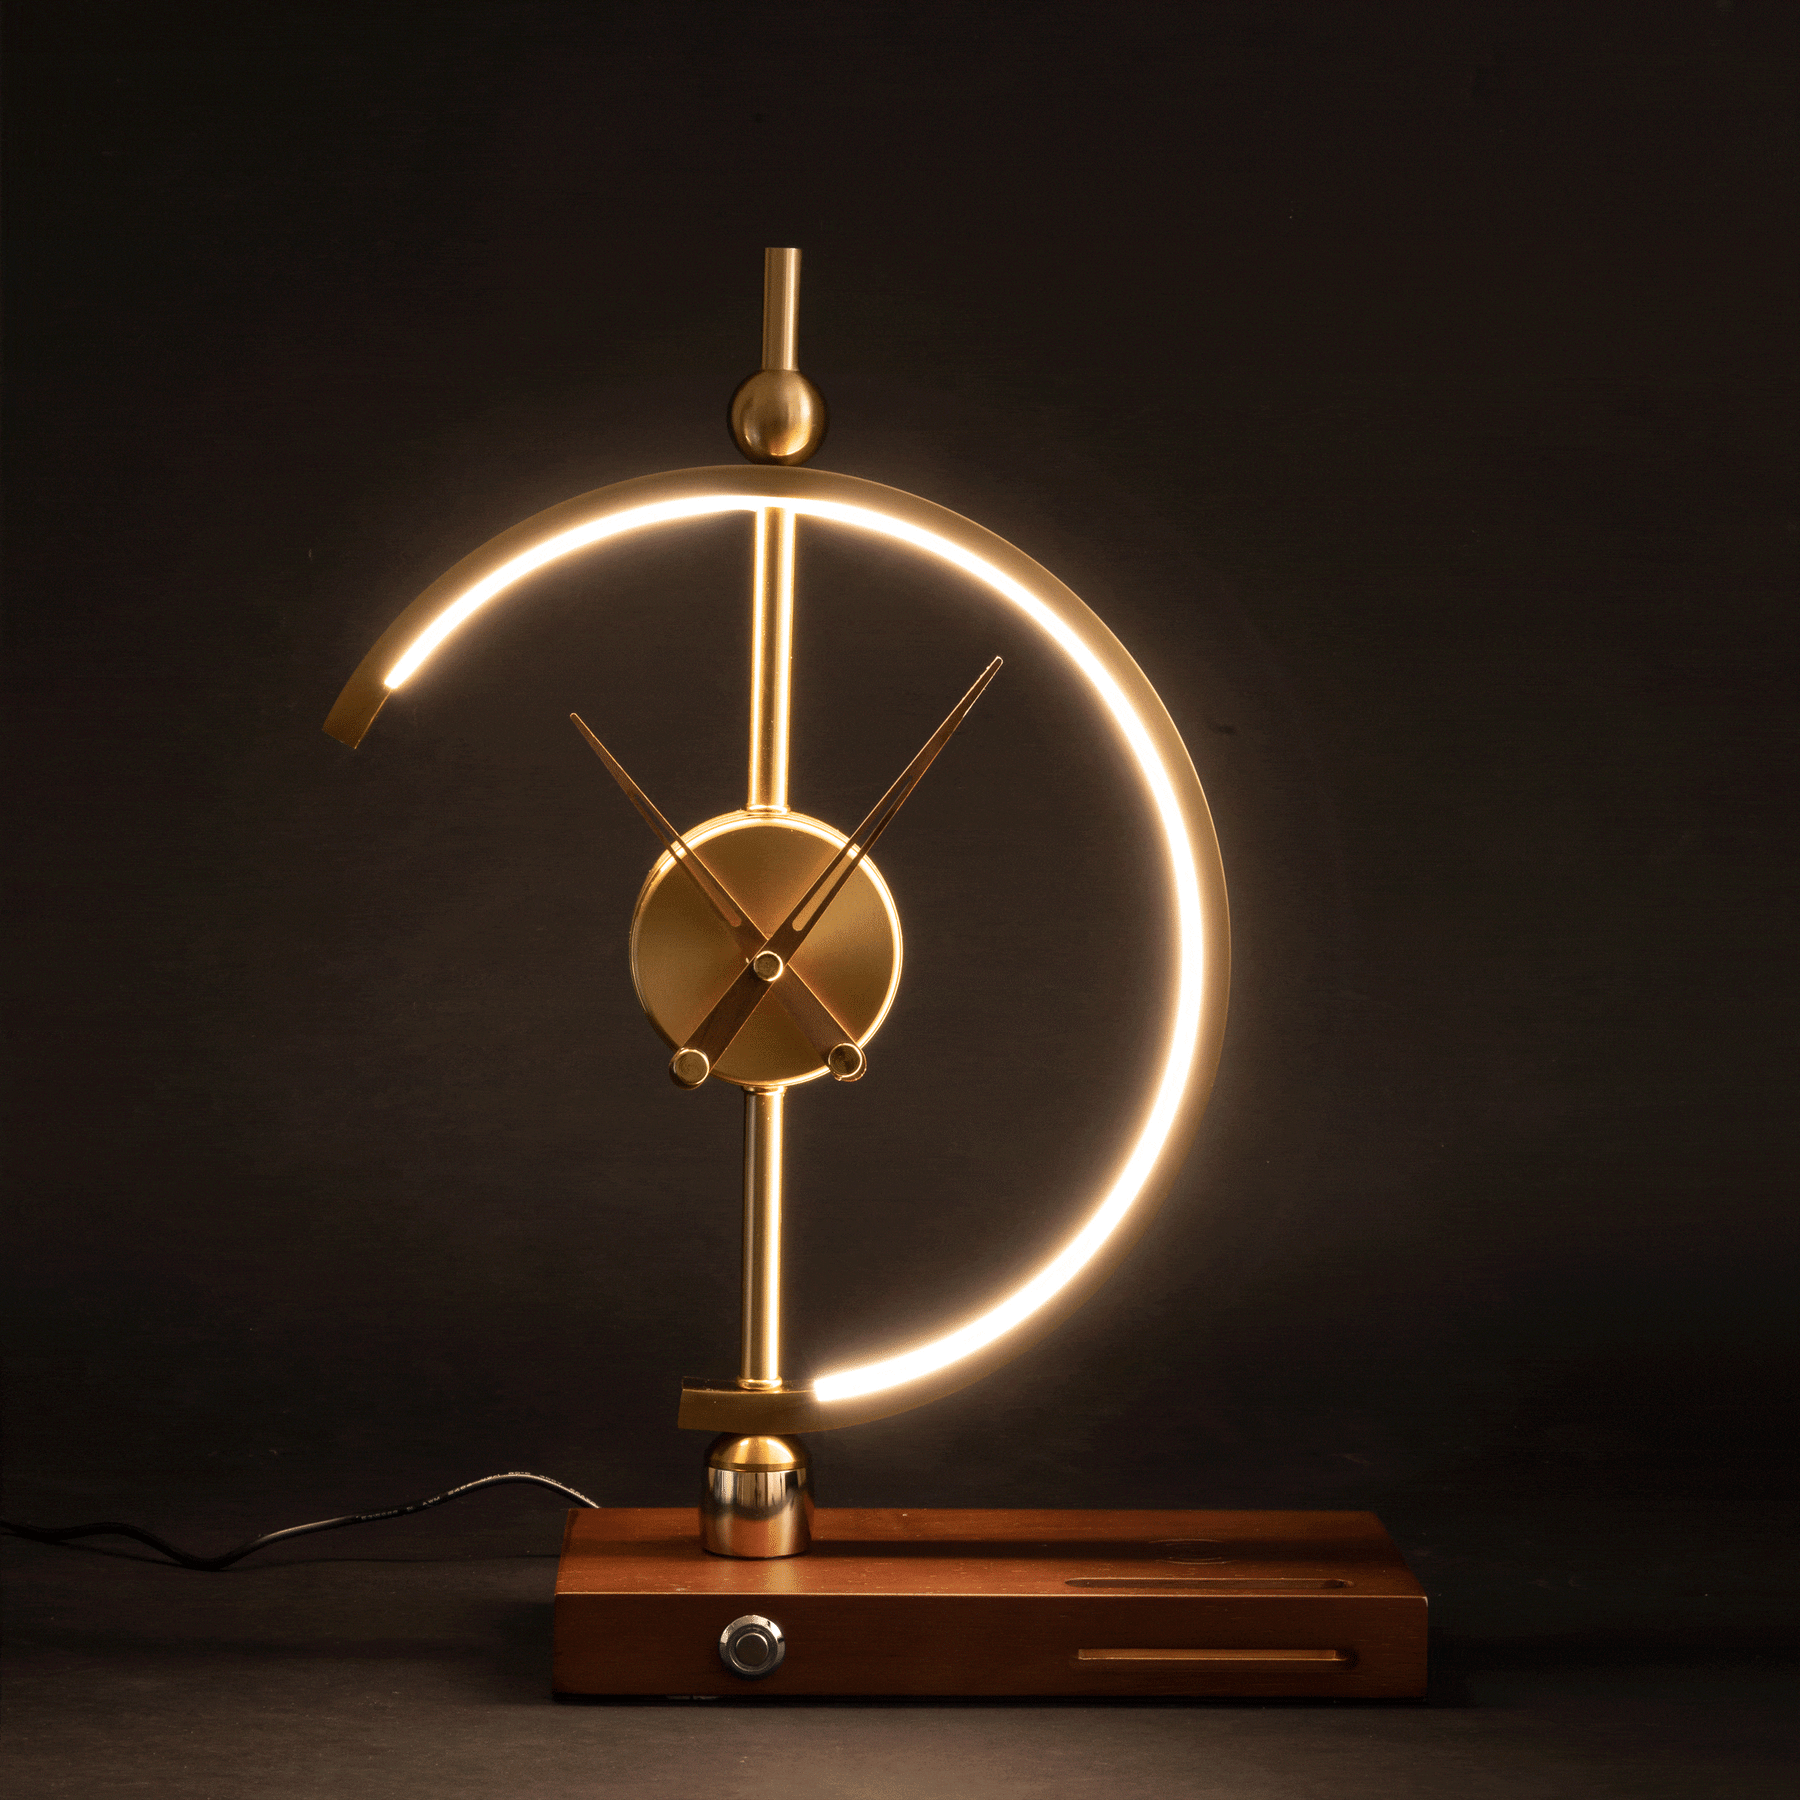 LED Khonsu Lamp Clock